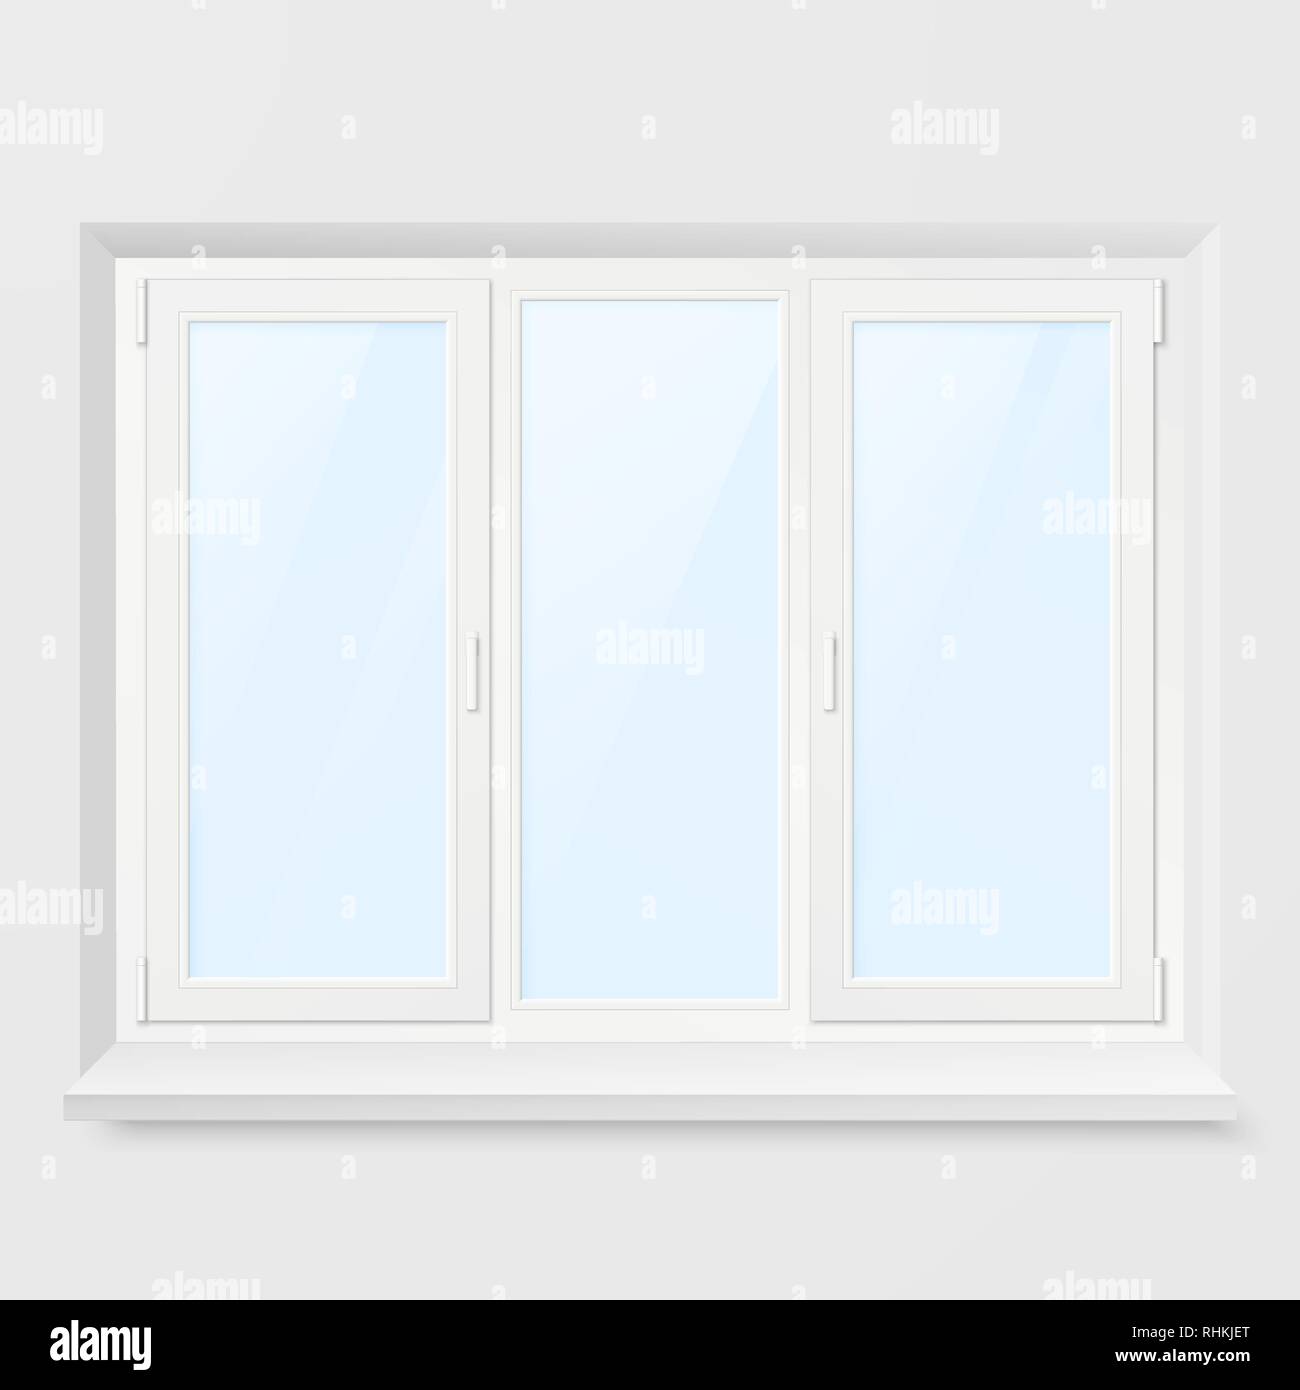 Weiß Büro Kunststoff Fenster. Fenster Vorderansicht. Vector Illustration isoliert auf weißem Hintergrund Stock Vektor